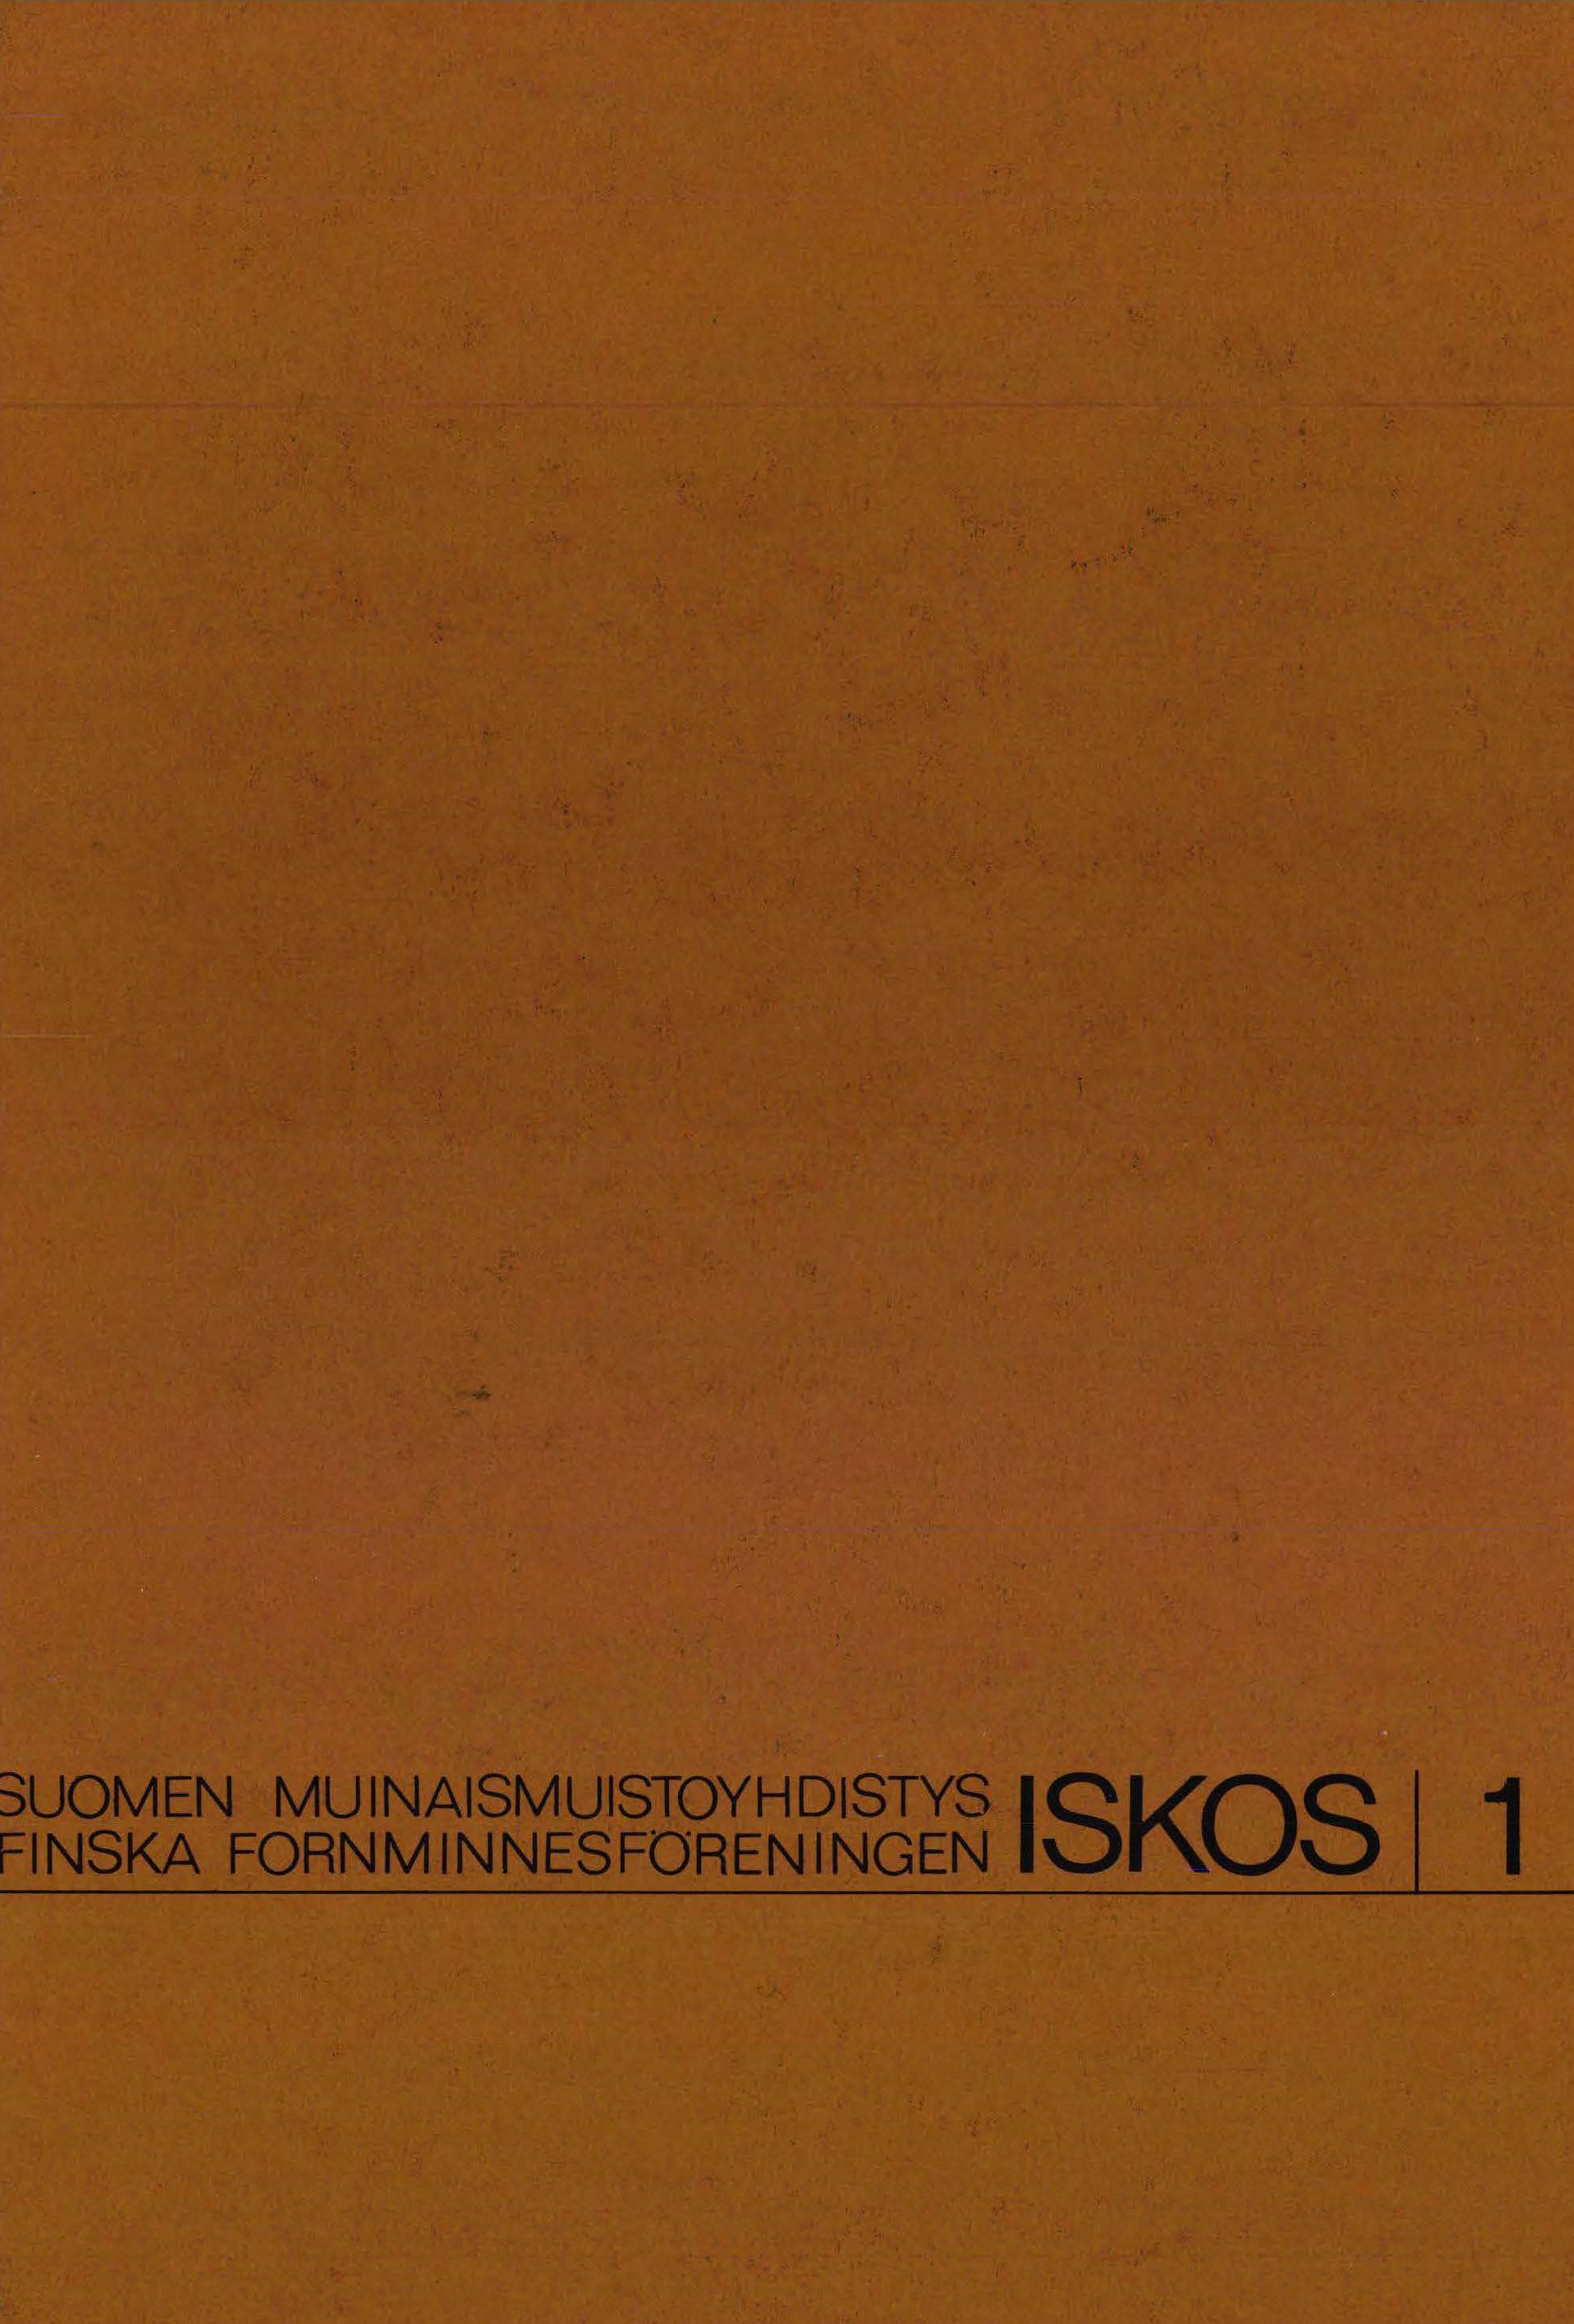 					View Vol. 1 (1976): Nordiska arkeologmötet i Helsingfors 1967: en berättelse över mötet och dess förhandlingar
				